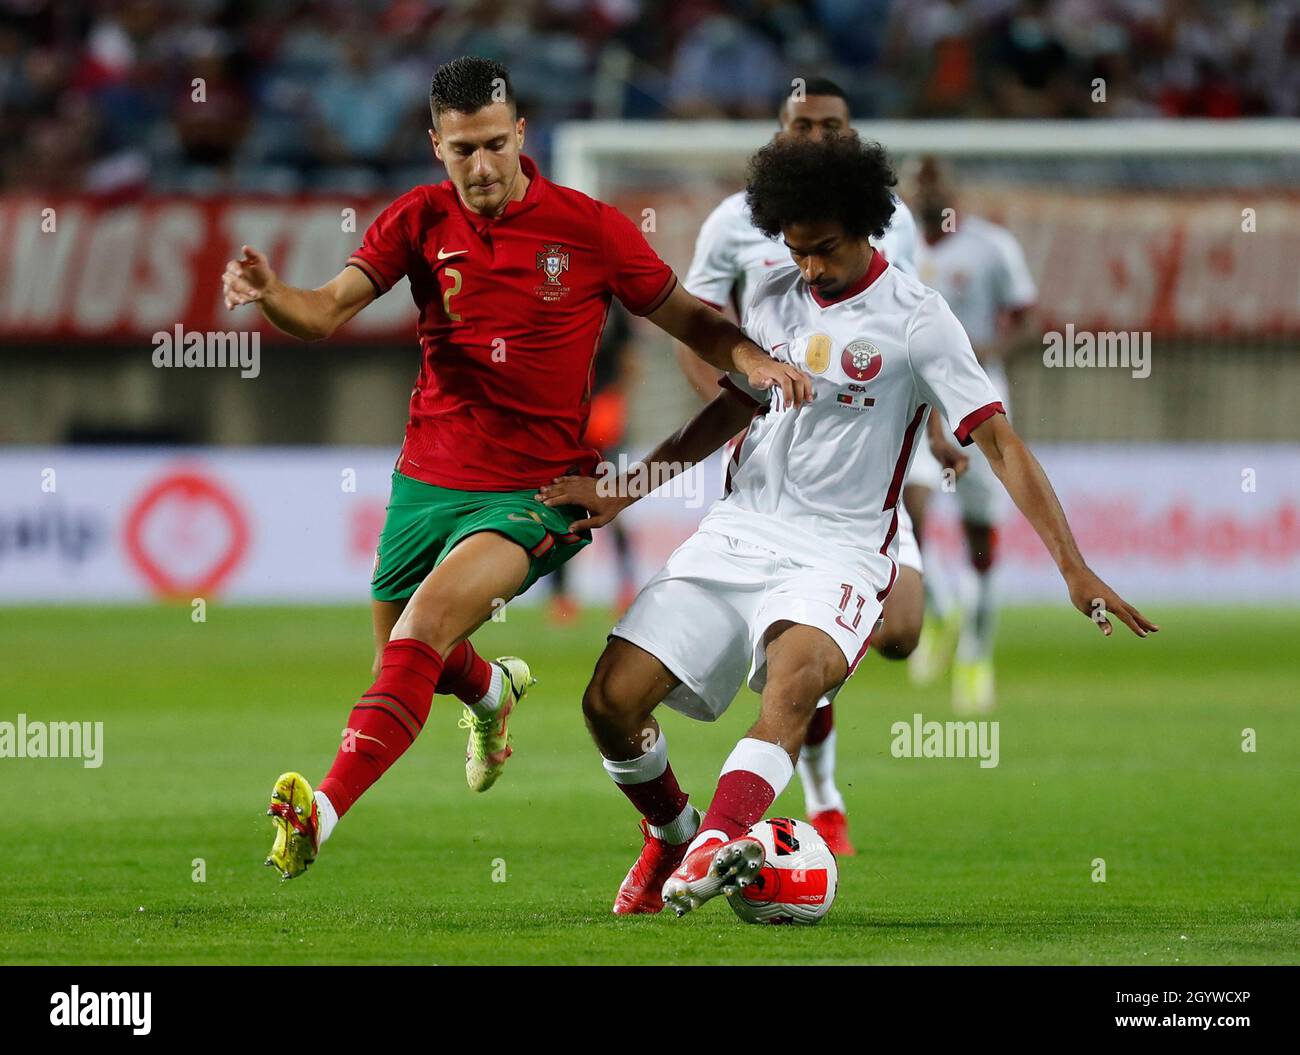 Portugal vs qatar